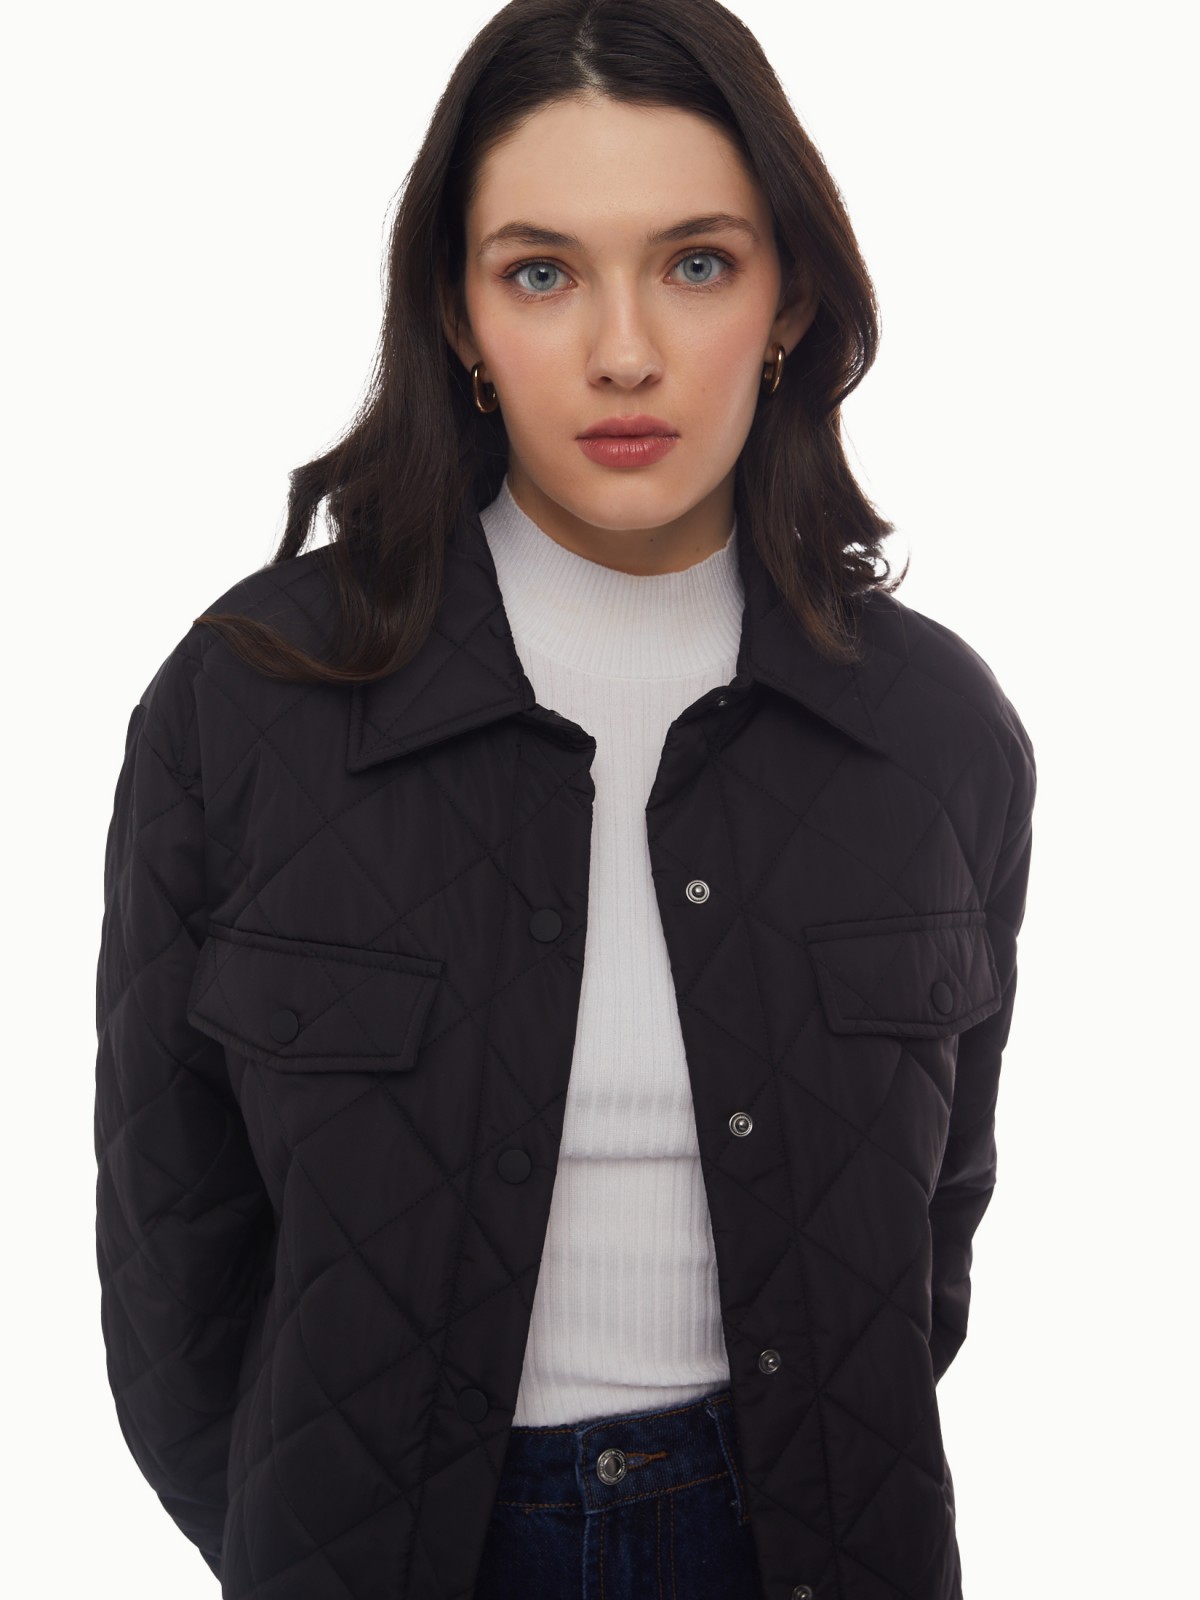 Утеплённая стёганая куртка-рубашка на синтепоне с поясом zolla 024135102134, цвет черный, размер XS - фото 3